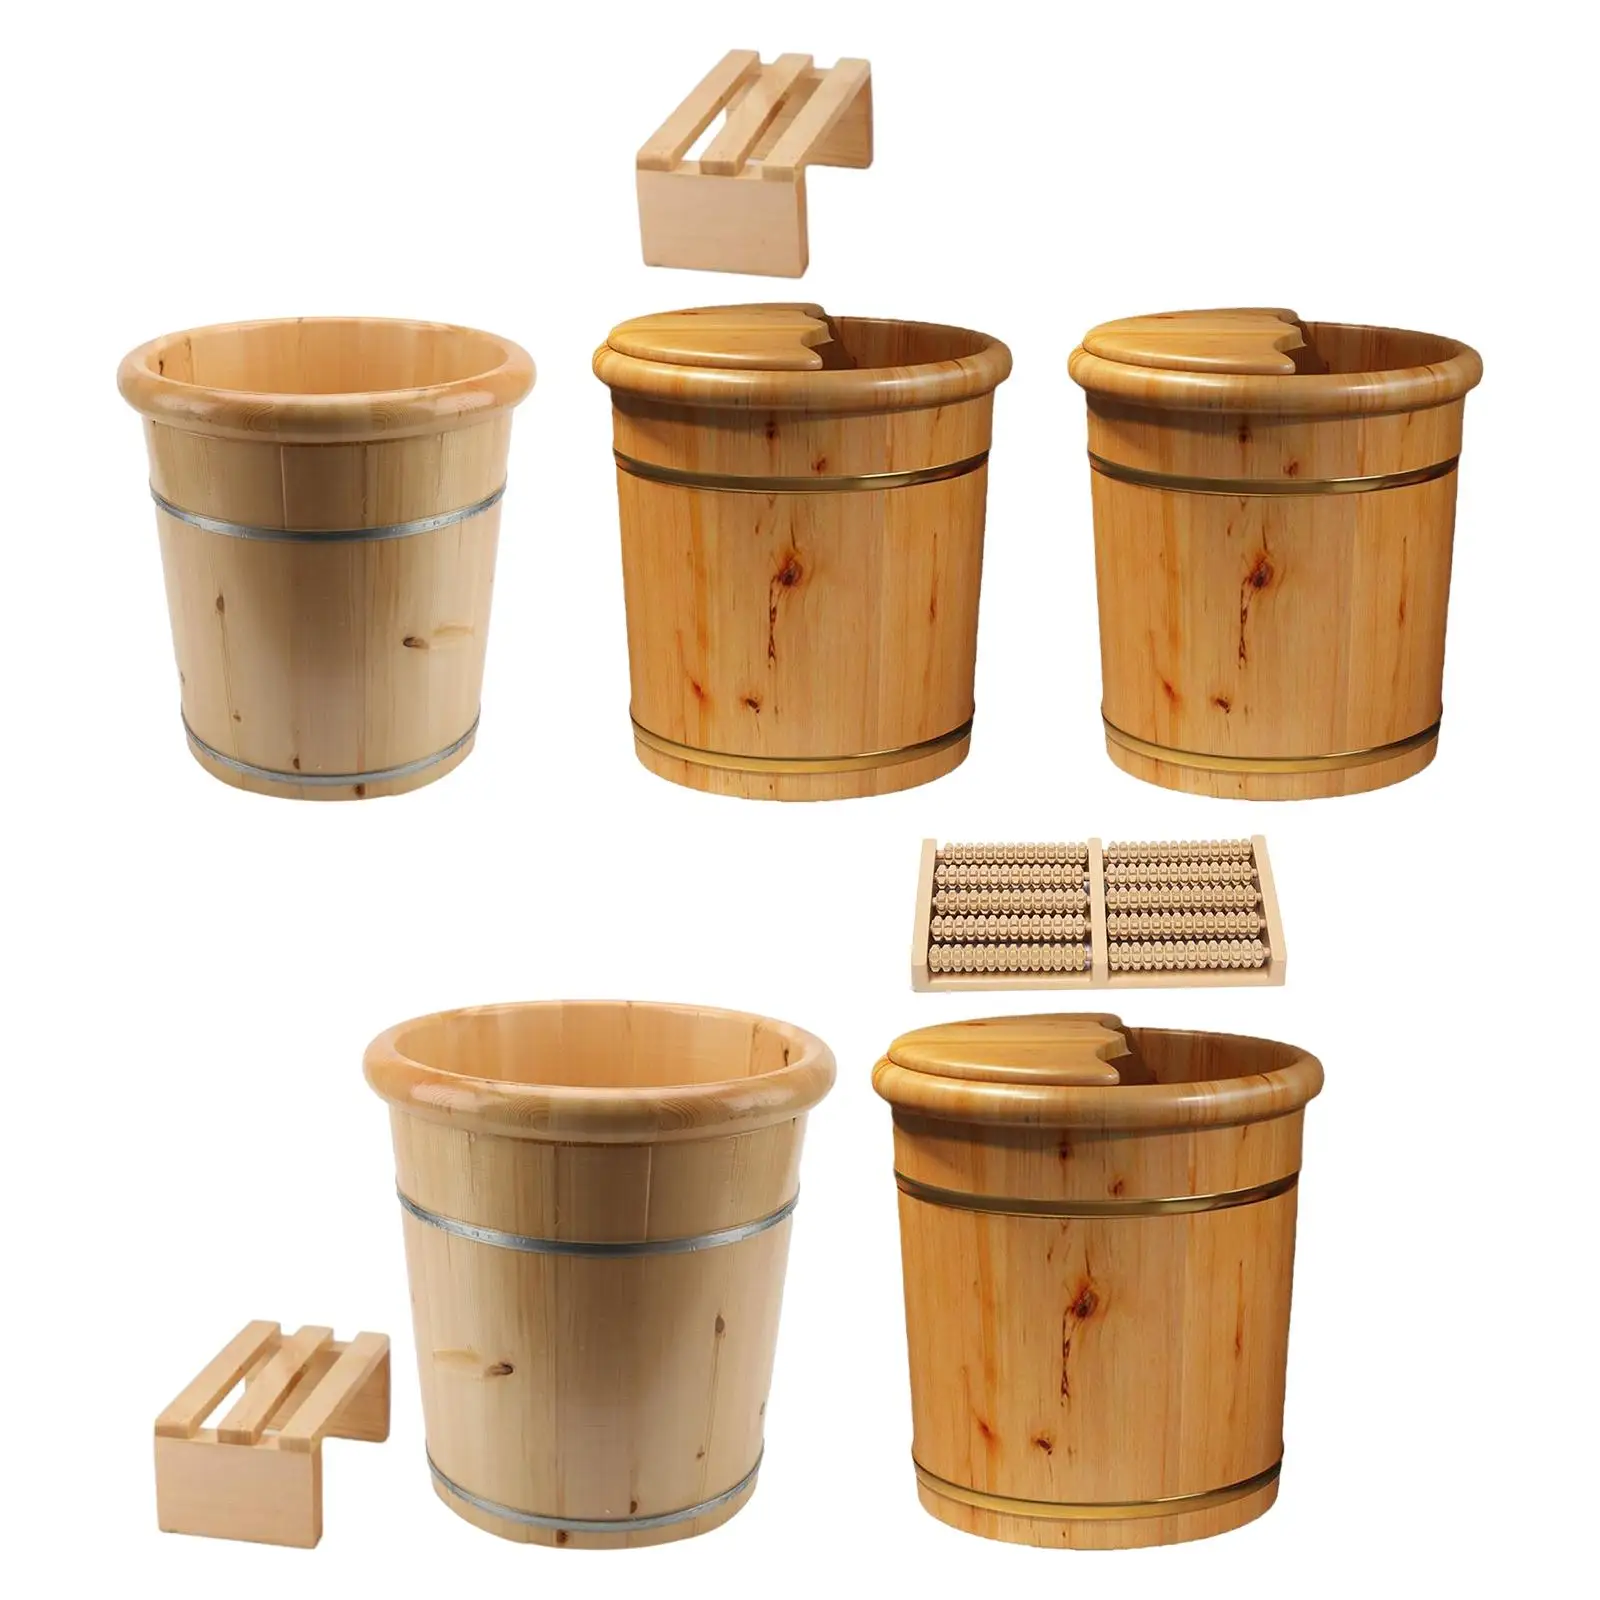 Wood Foot Bath Multipurpose Comfortable SPA Washing Bowl Bucket Foot Washing Barrel for Travel Bedroom Home Use Sauna Bathroom